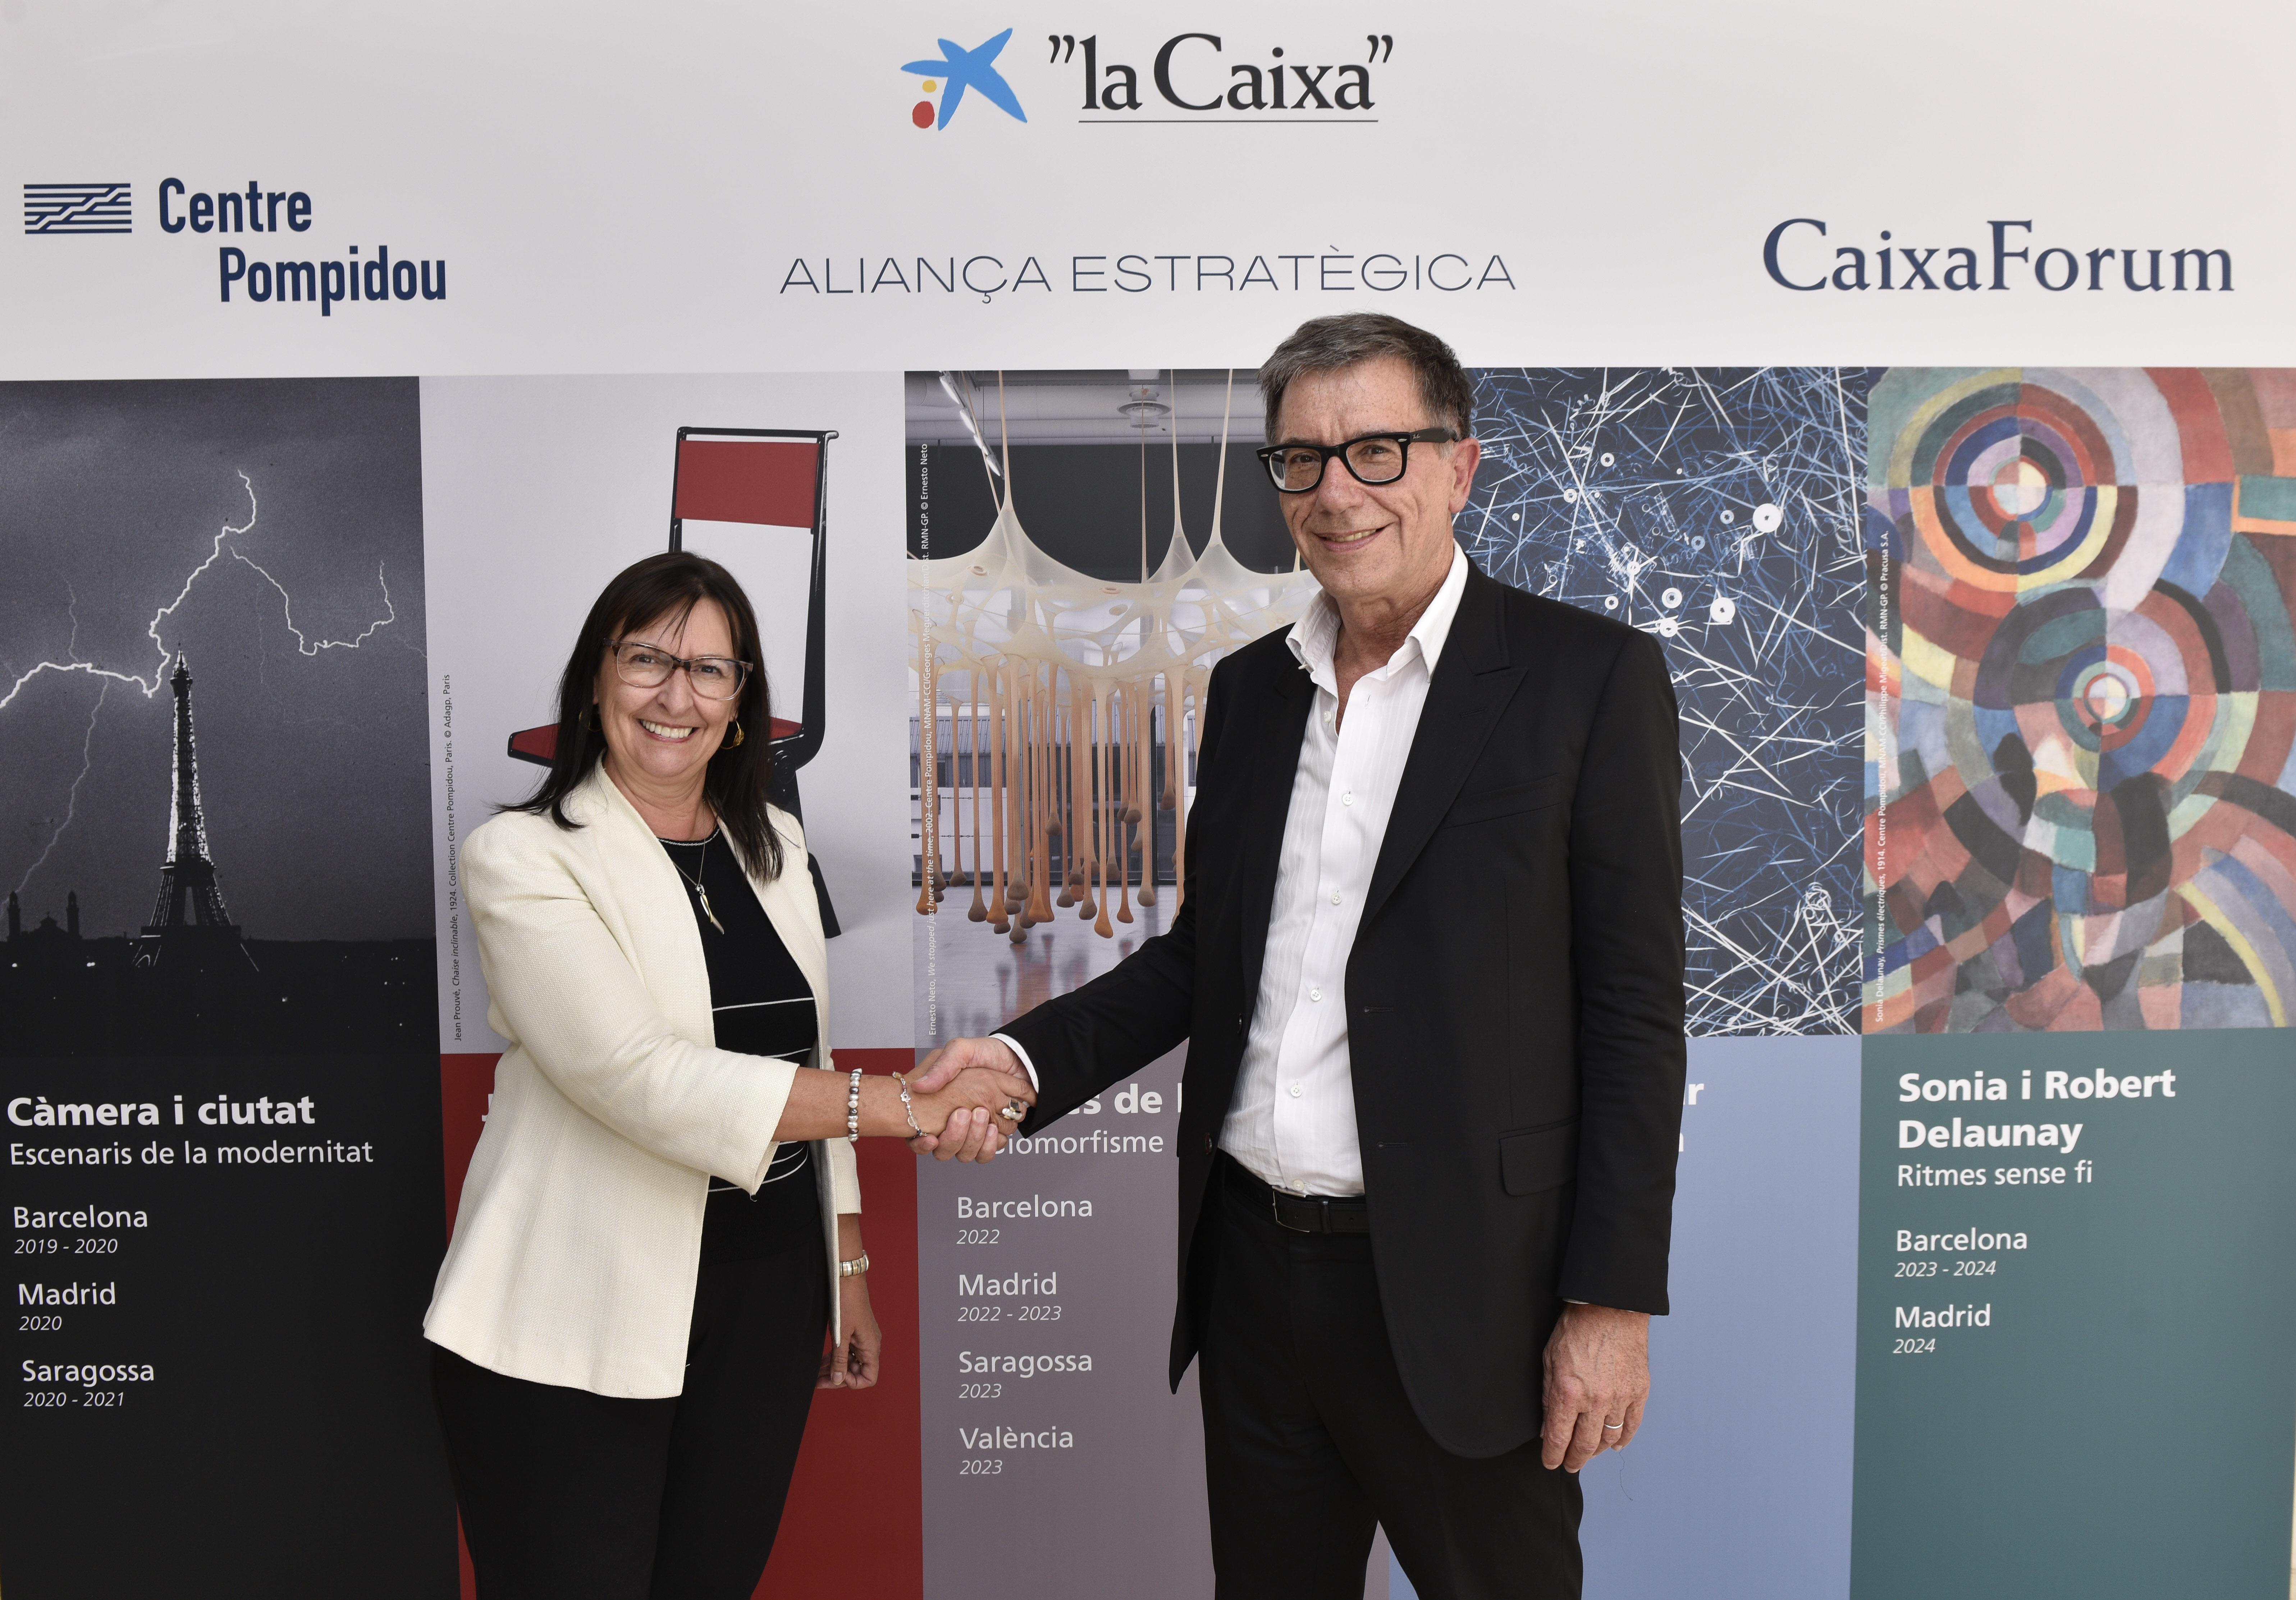 La directora general adjunta de la Fundación Bancaria ”la Caixa”, Elisa Durán, y el presidente del Centre Pompidou, Serge Lasvignes, conversan después del acuerdo entre las dos instituciones.